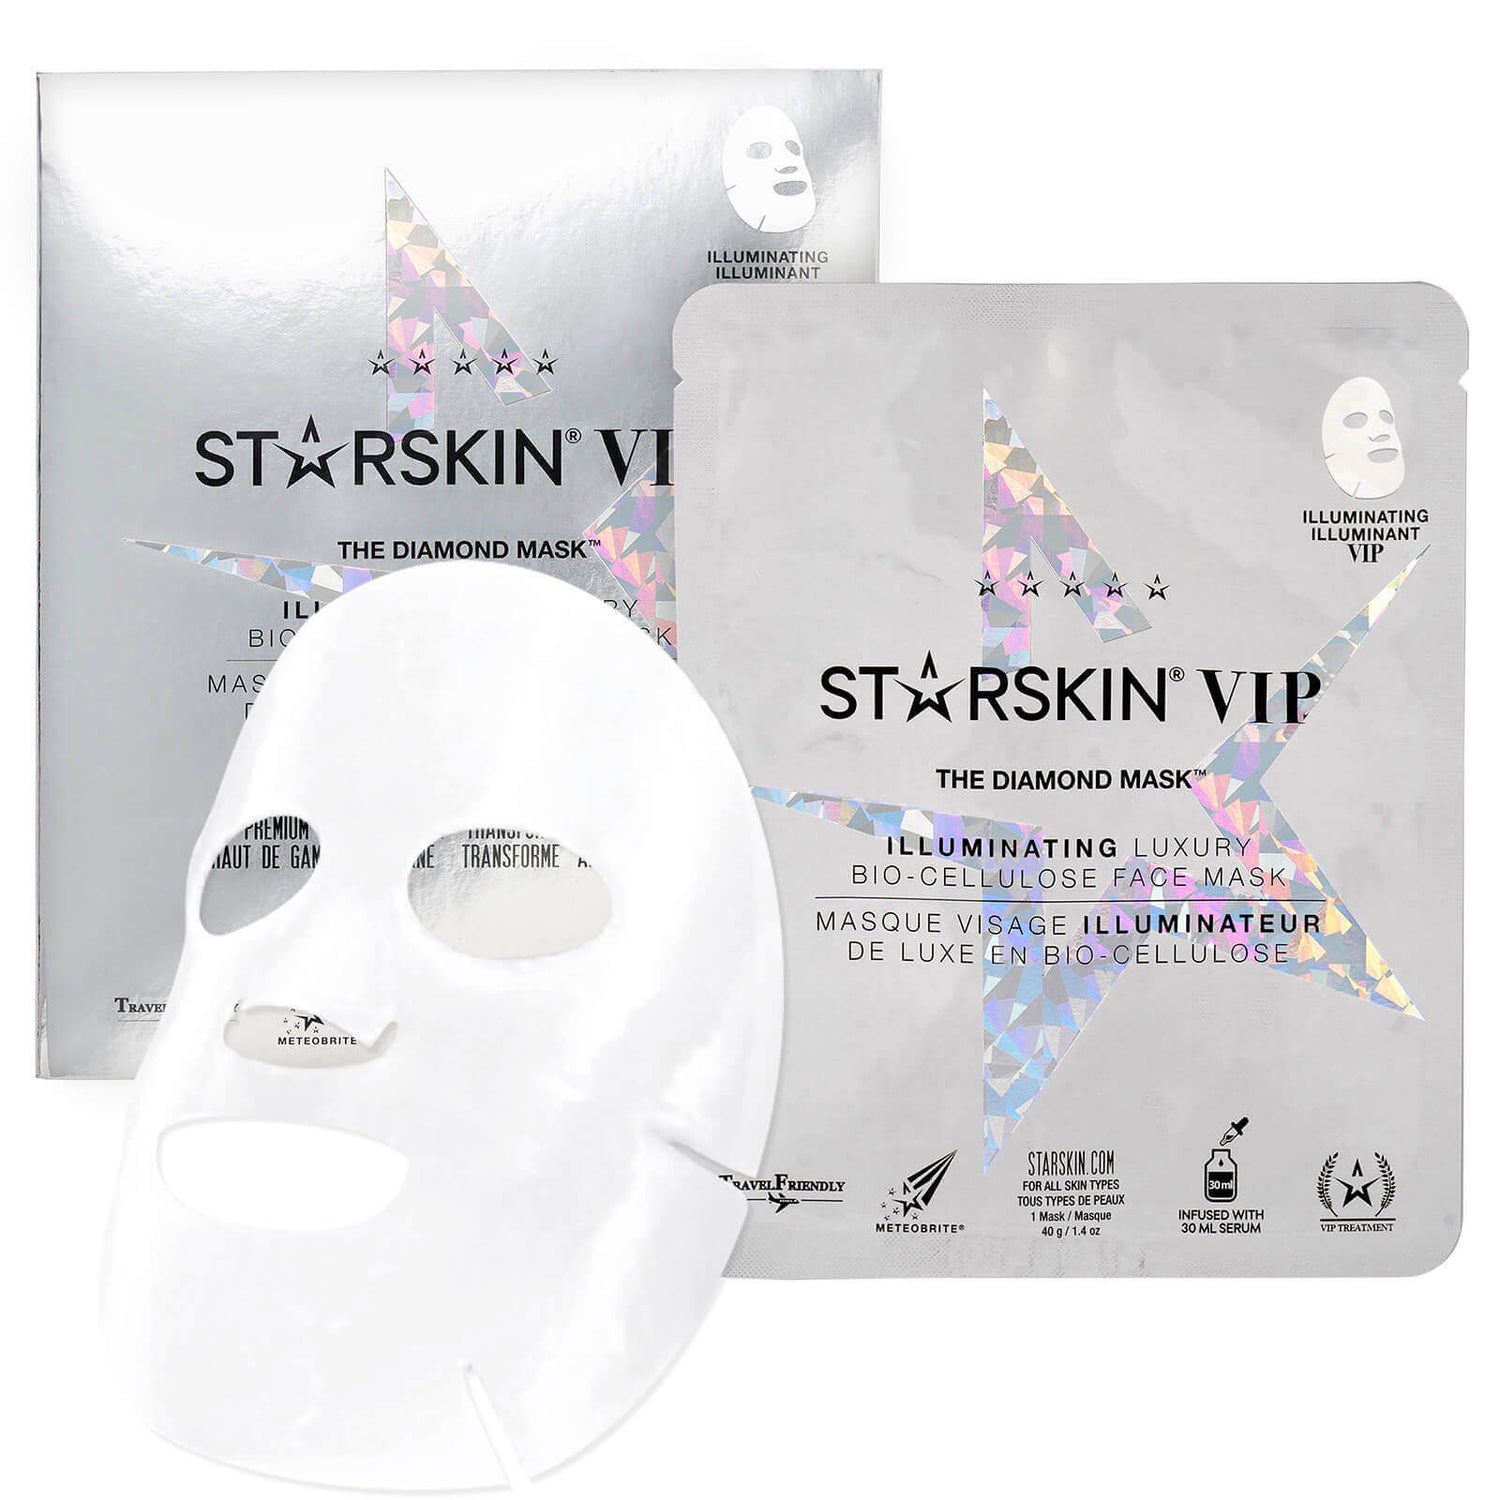 STARSKIN VIP The Diamond Mask Illuminating Luxury Bio-Cellulose Face Mask